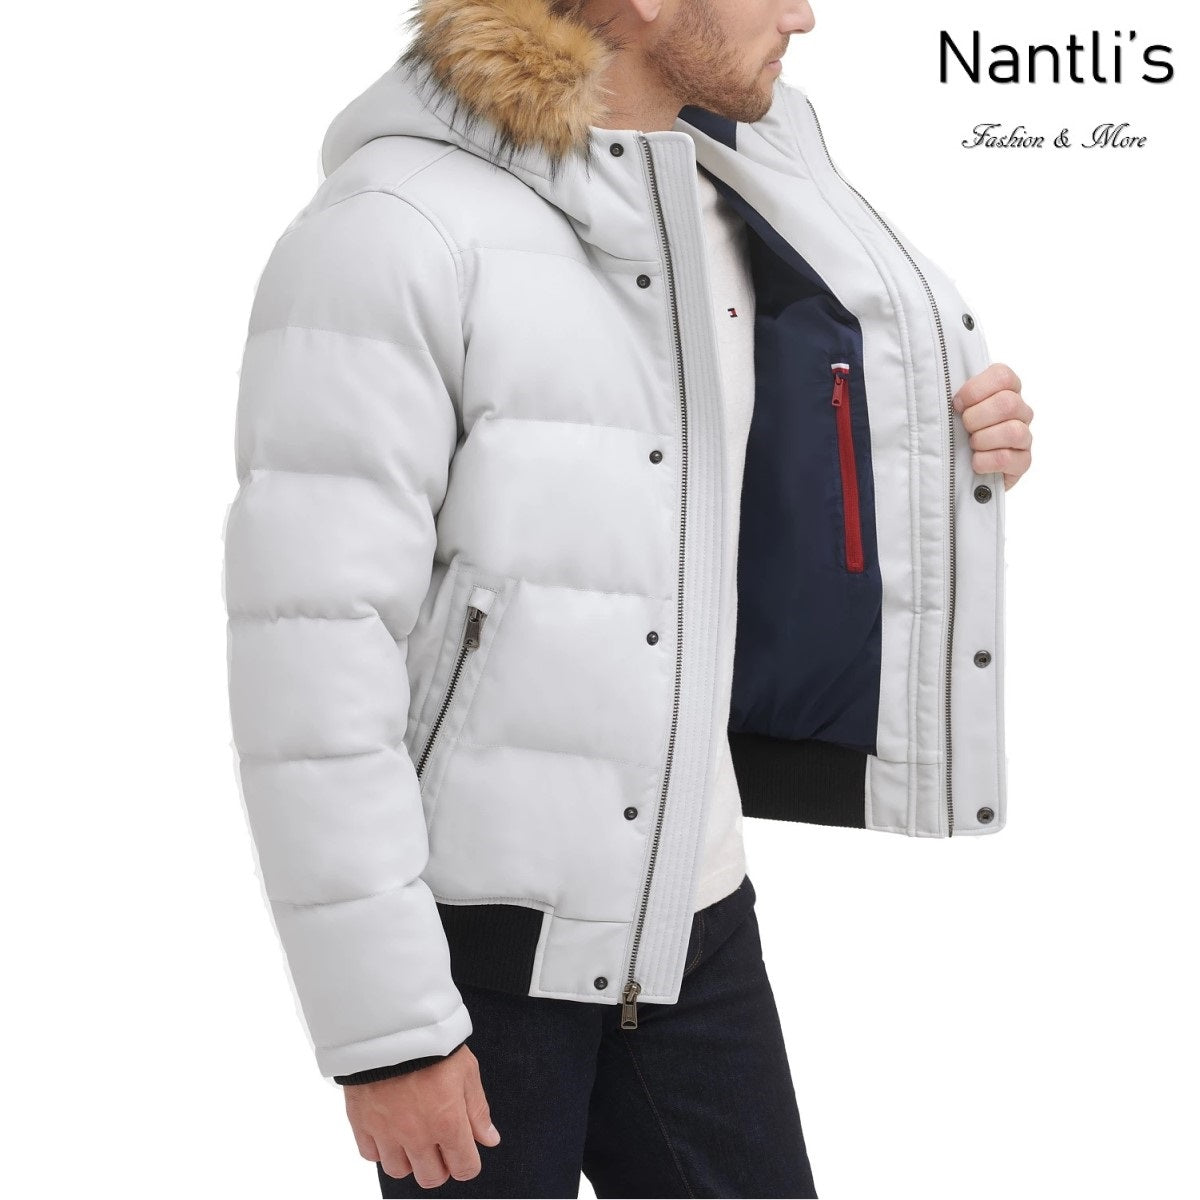 Chamarra para Hombre - TM-150AU263 Jacket for Men – Nantli's - Online Store